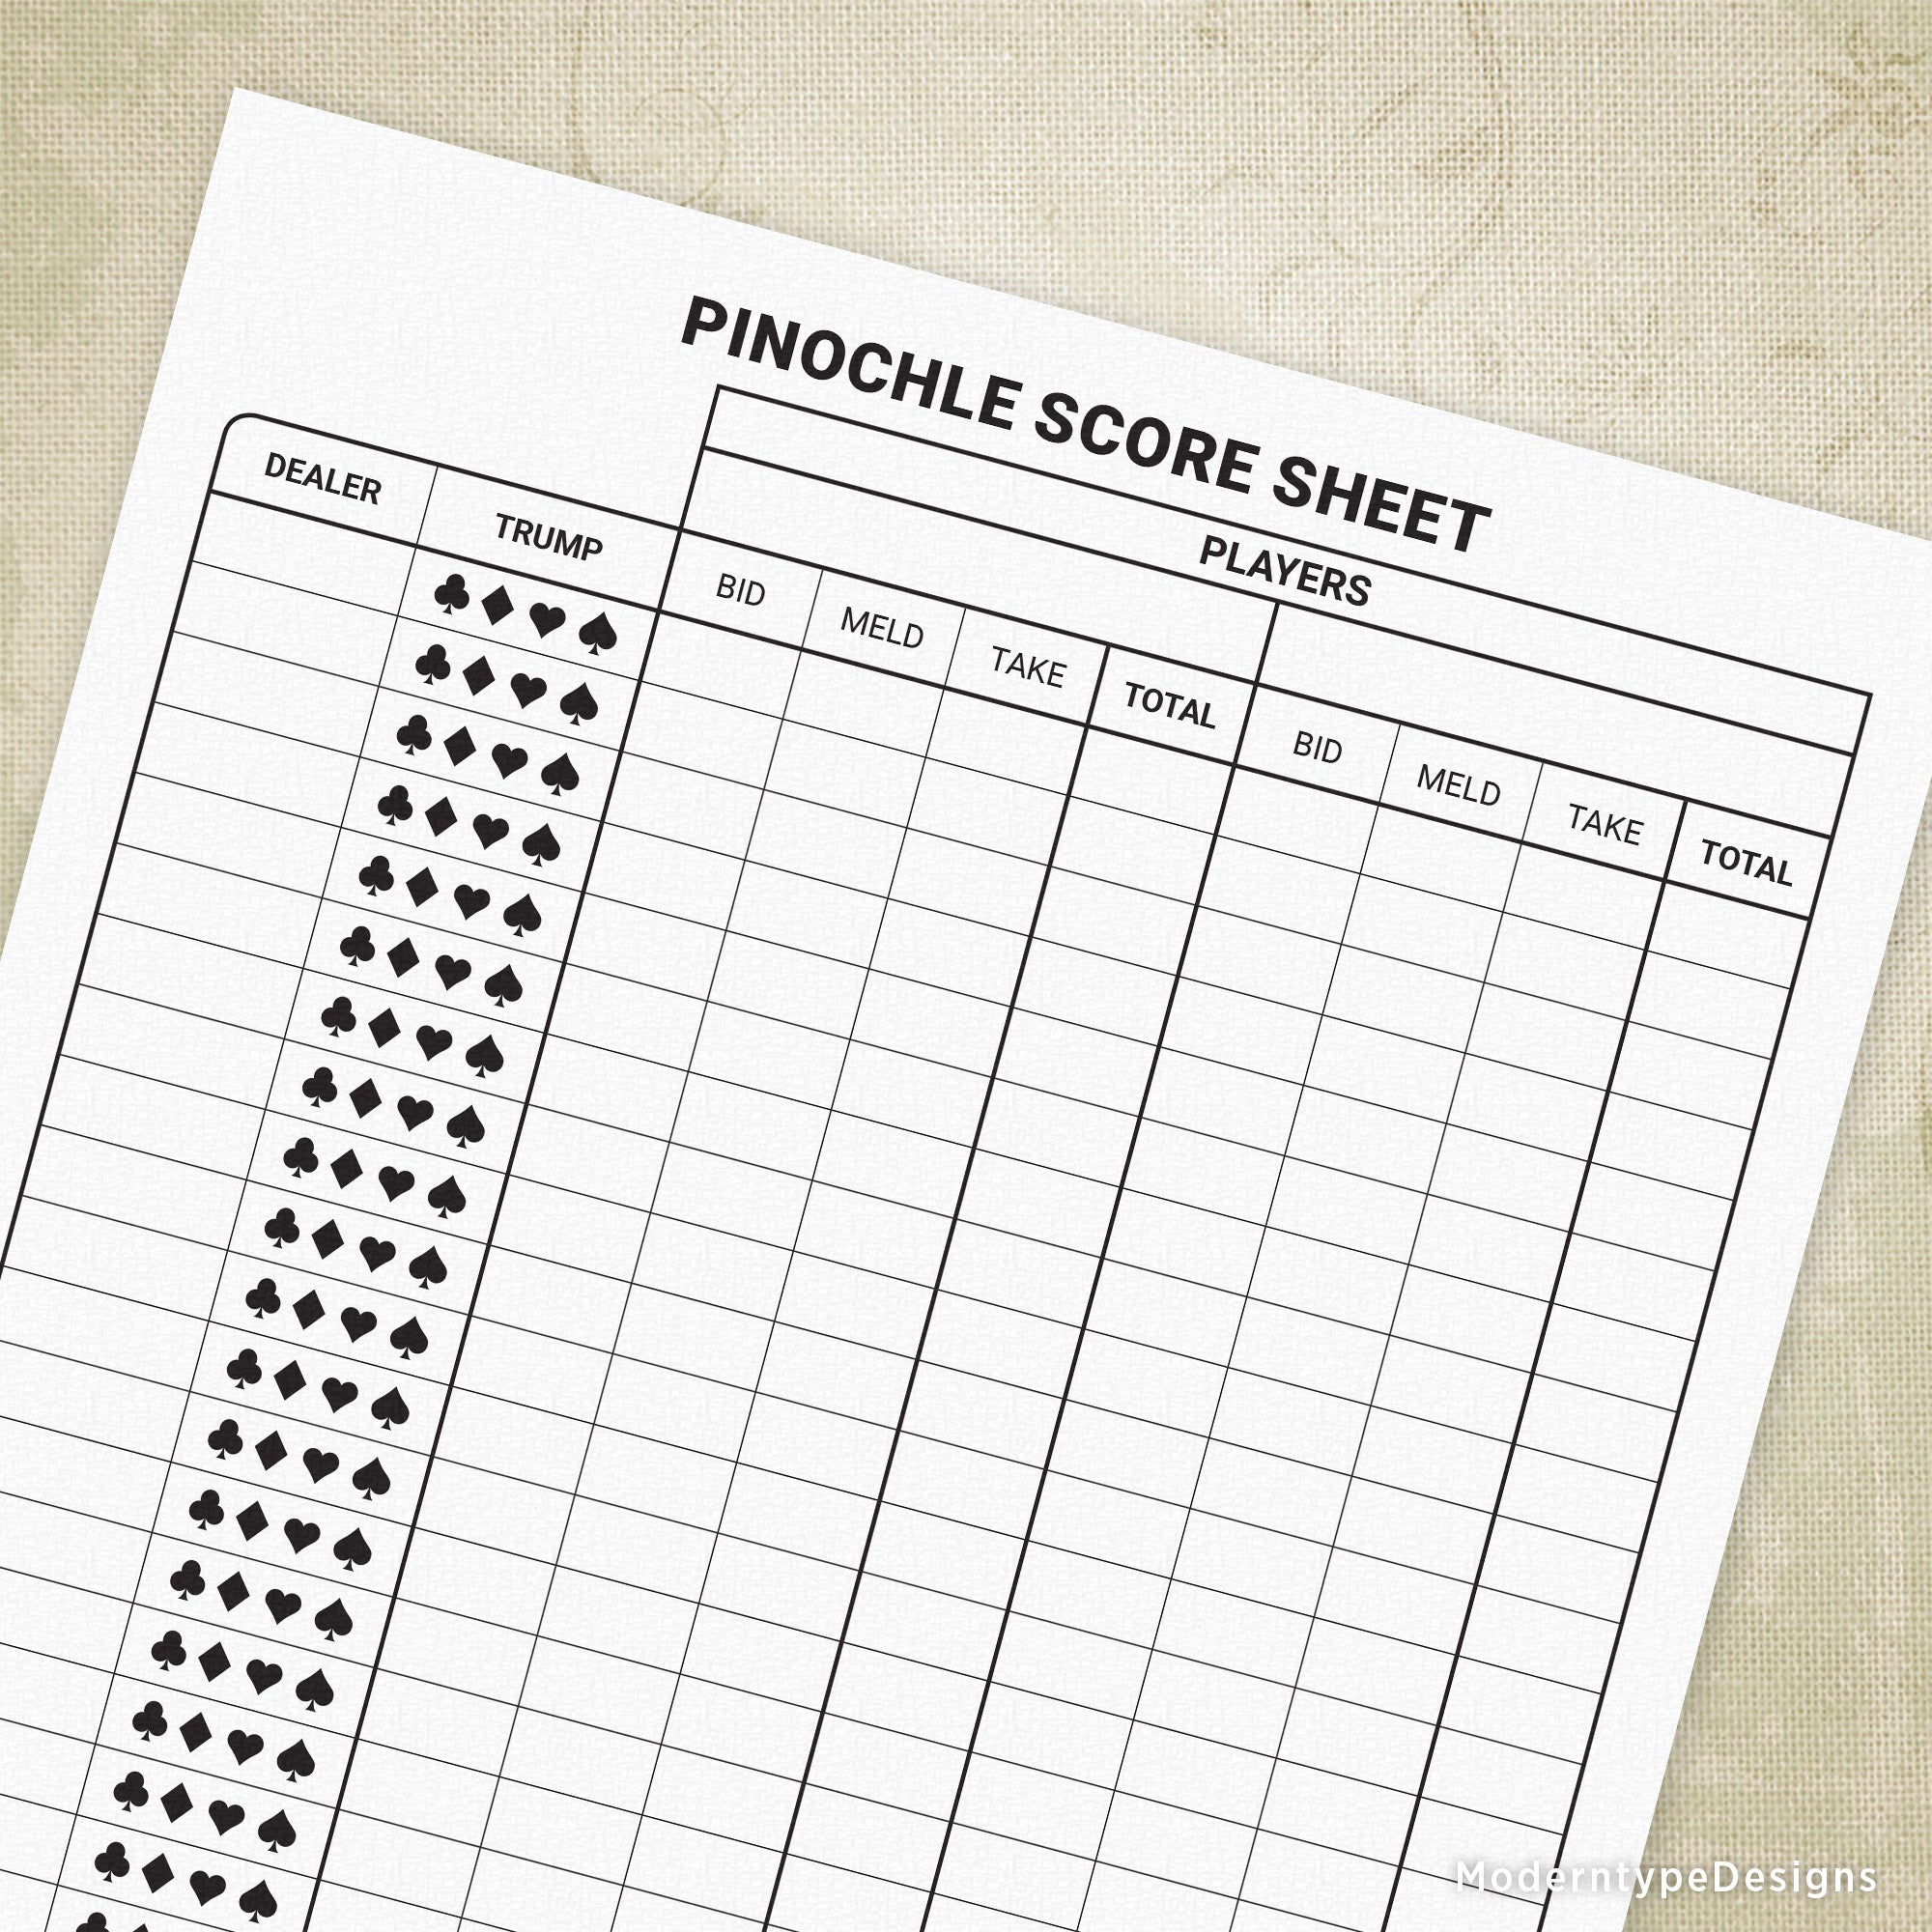 Free pinochle score sheets